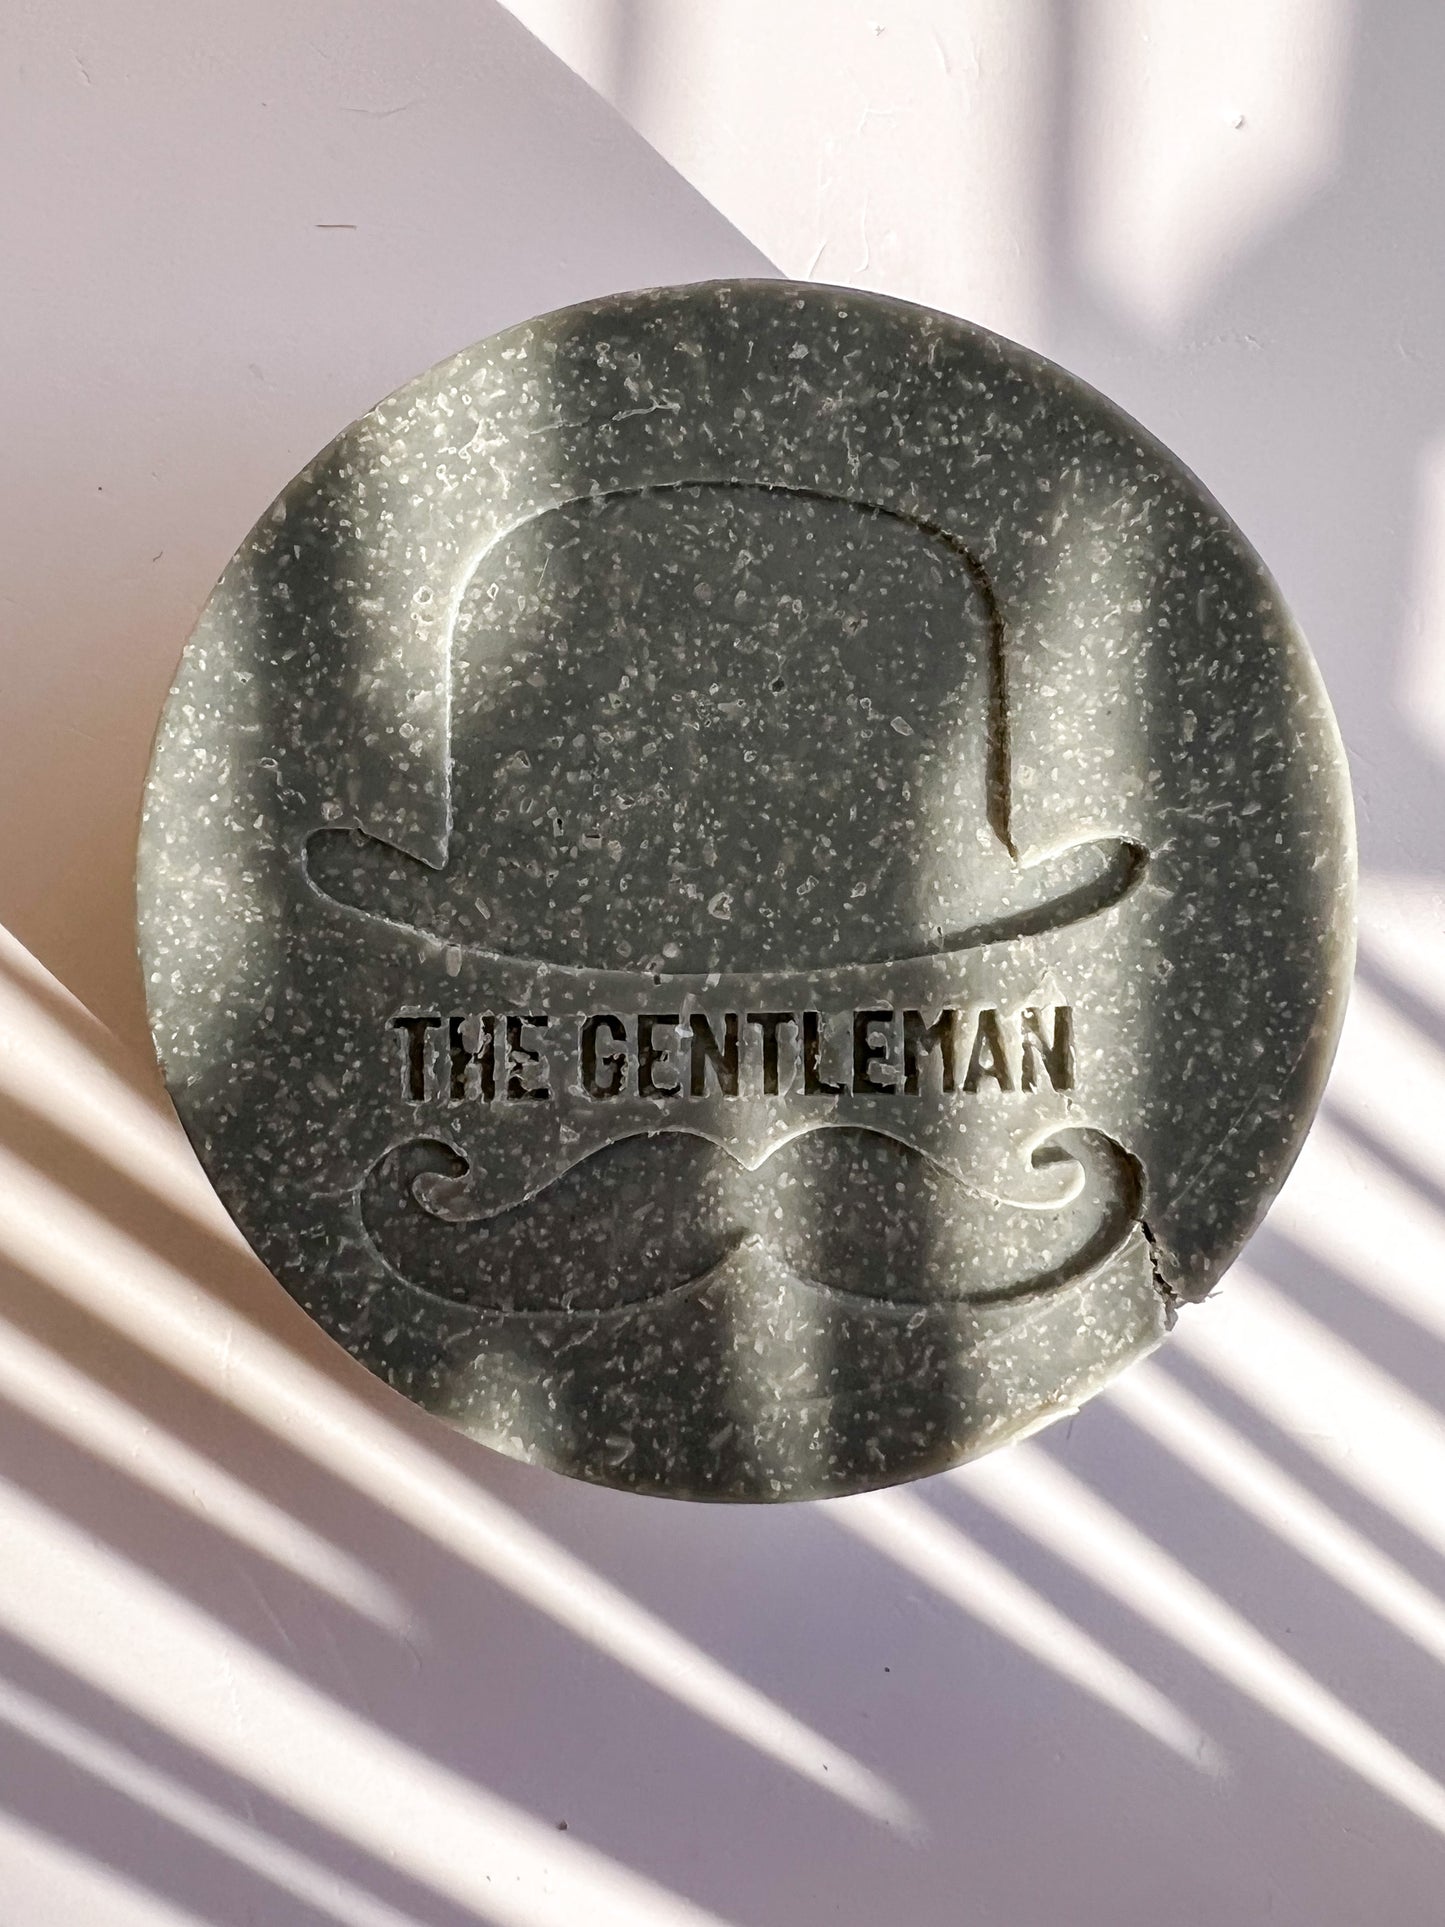 The Gentleman -Salt Soap Bar